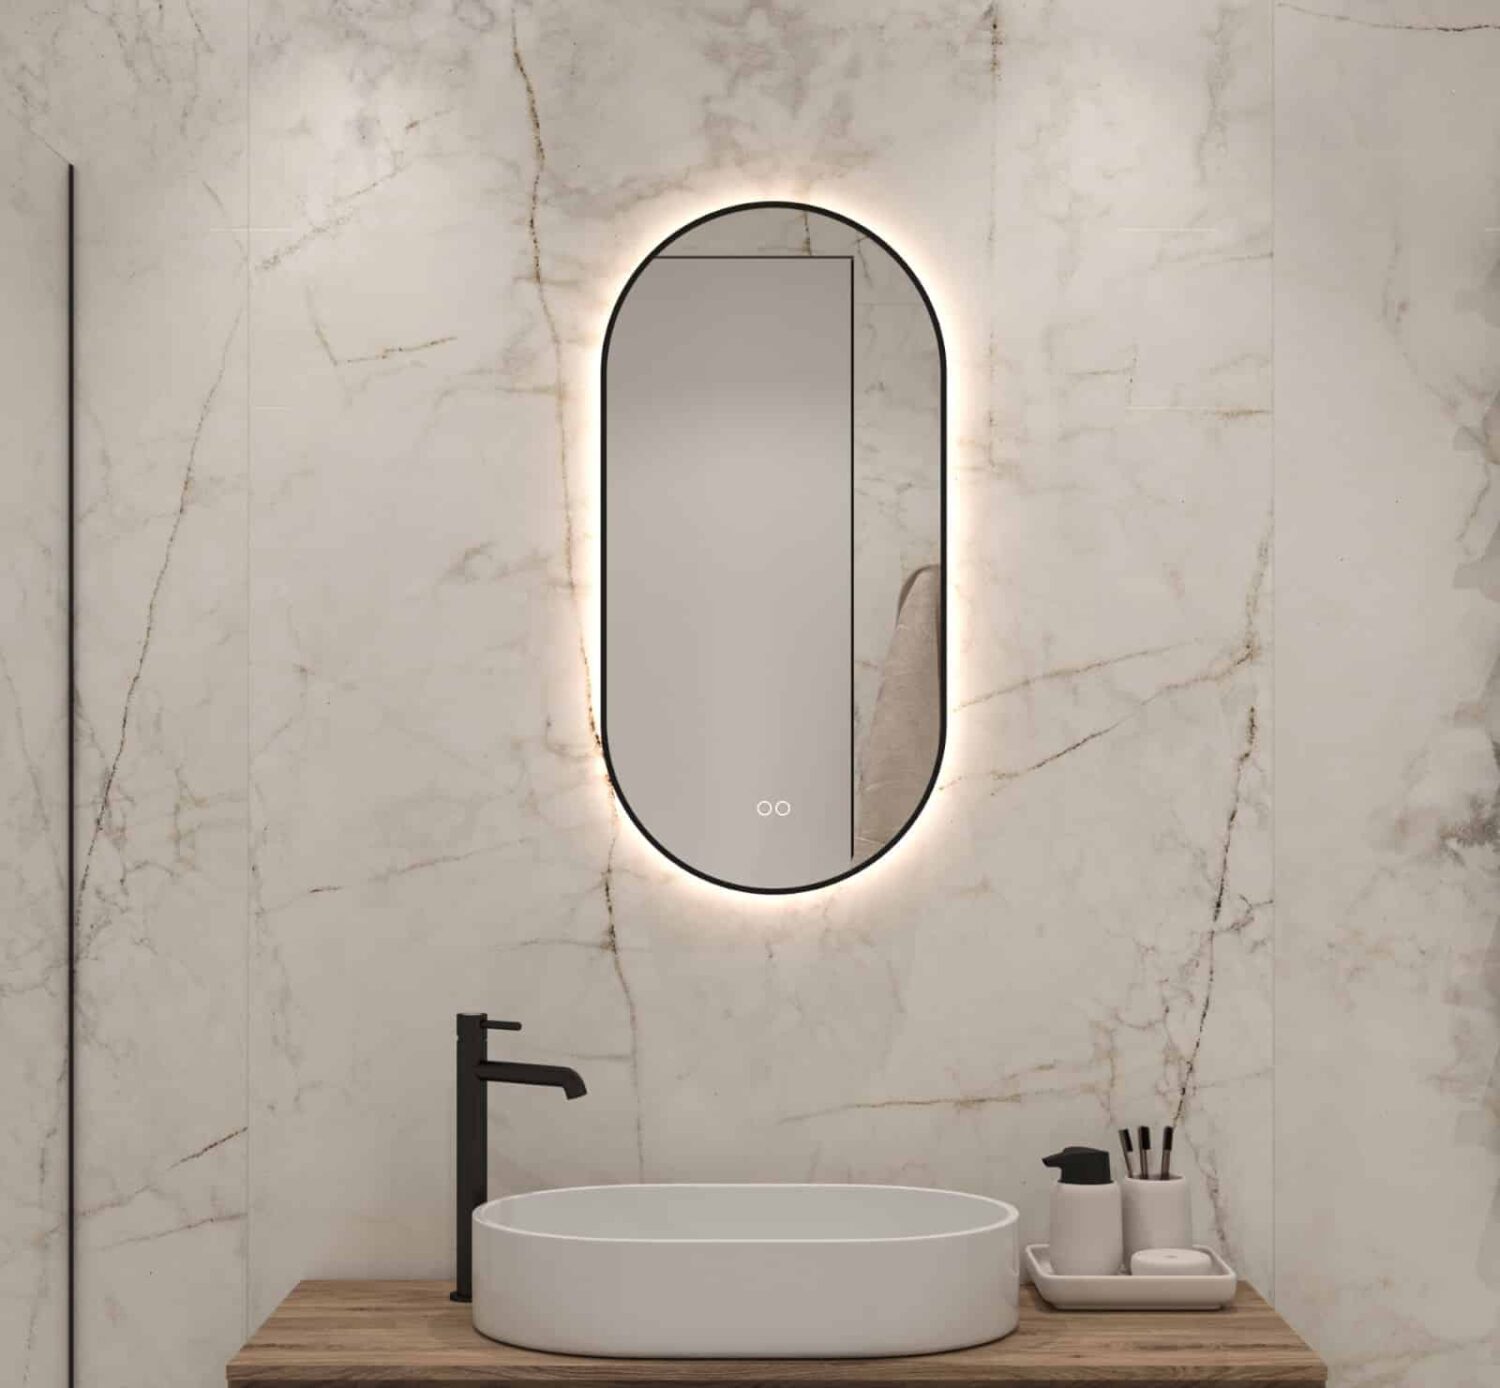 motto Goedaardig Hoe Ovale badkamerspiegel met LED verlichting, verwarming, touch sensor,  kleurenwissel en mat zwart frame 40x80 cm - Designspiegels